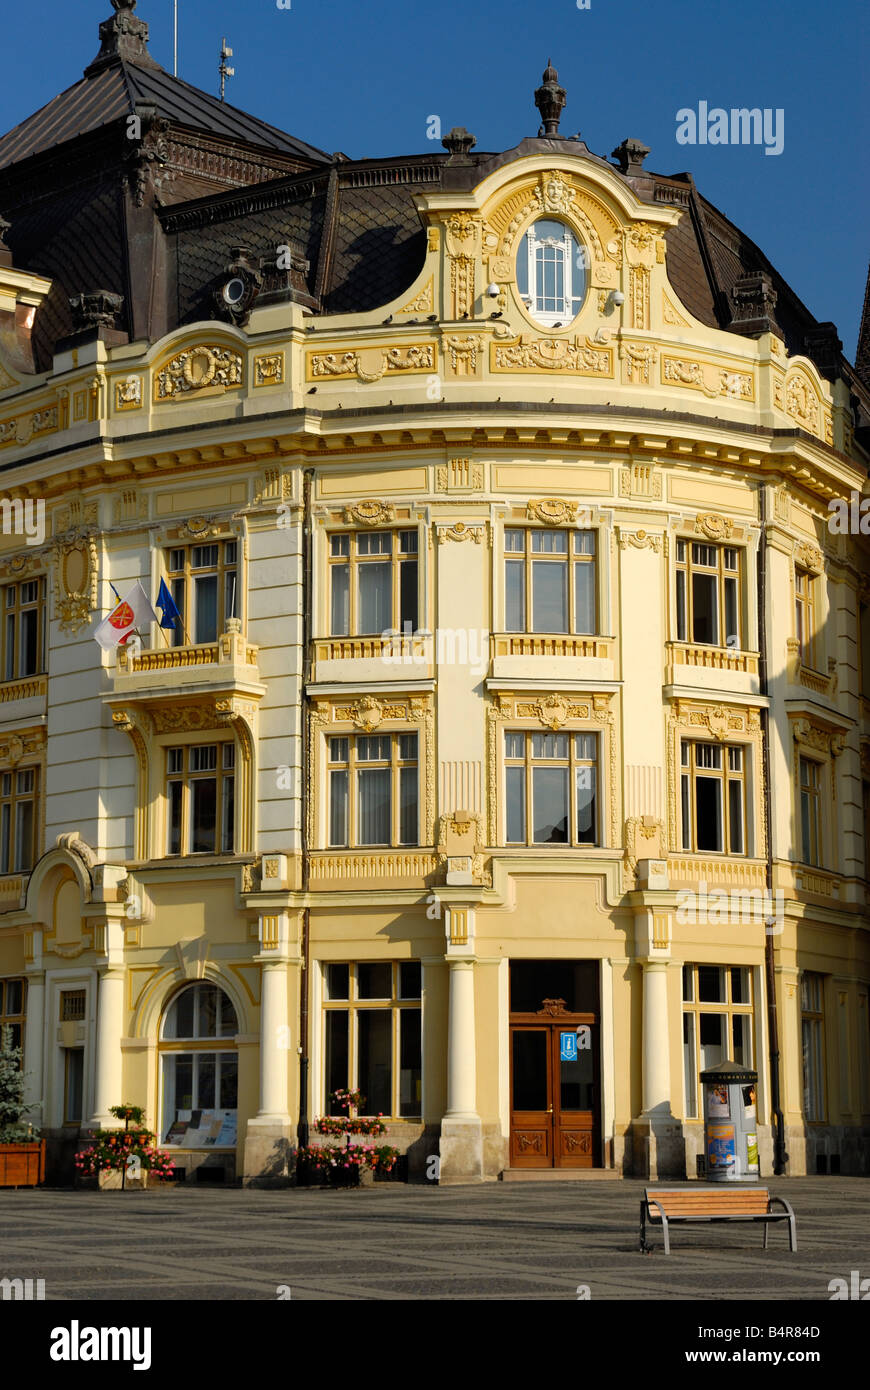 Farbenfrohe Gebäude am Piata Mare Hermannstadt Siebenbürgen Rumänien Stockfoto